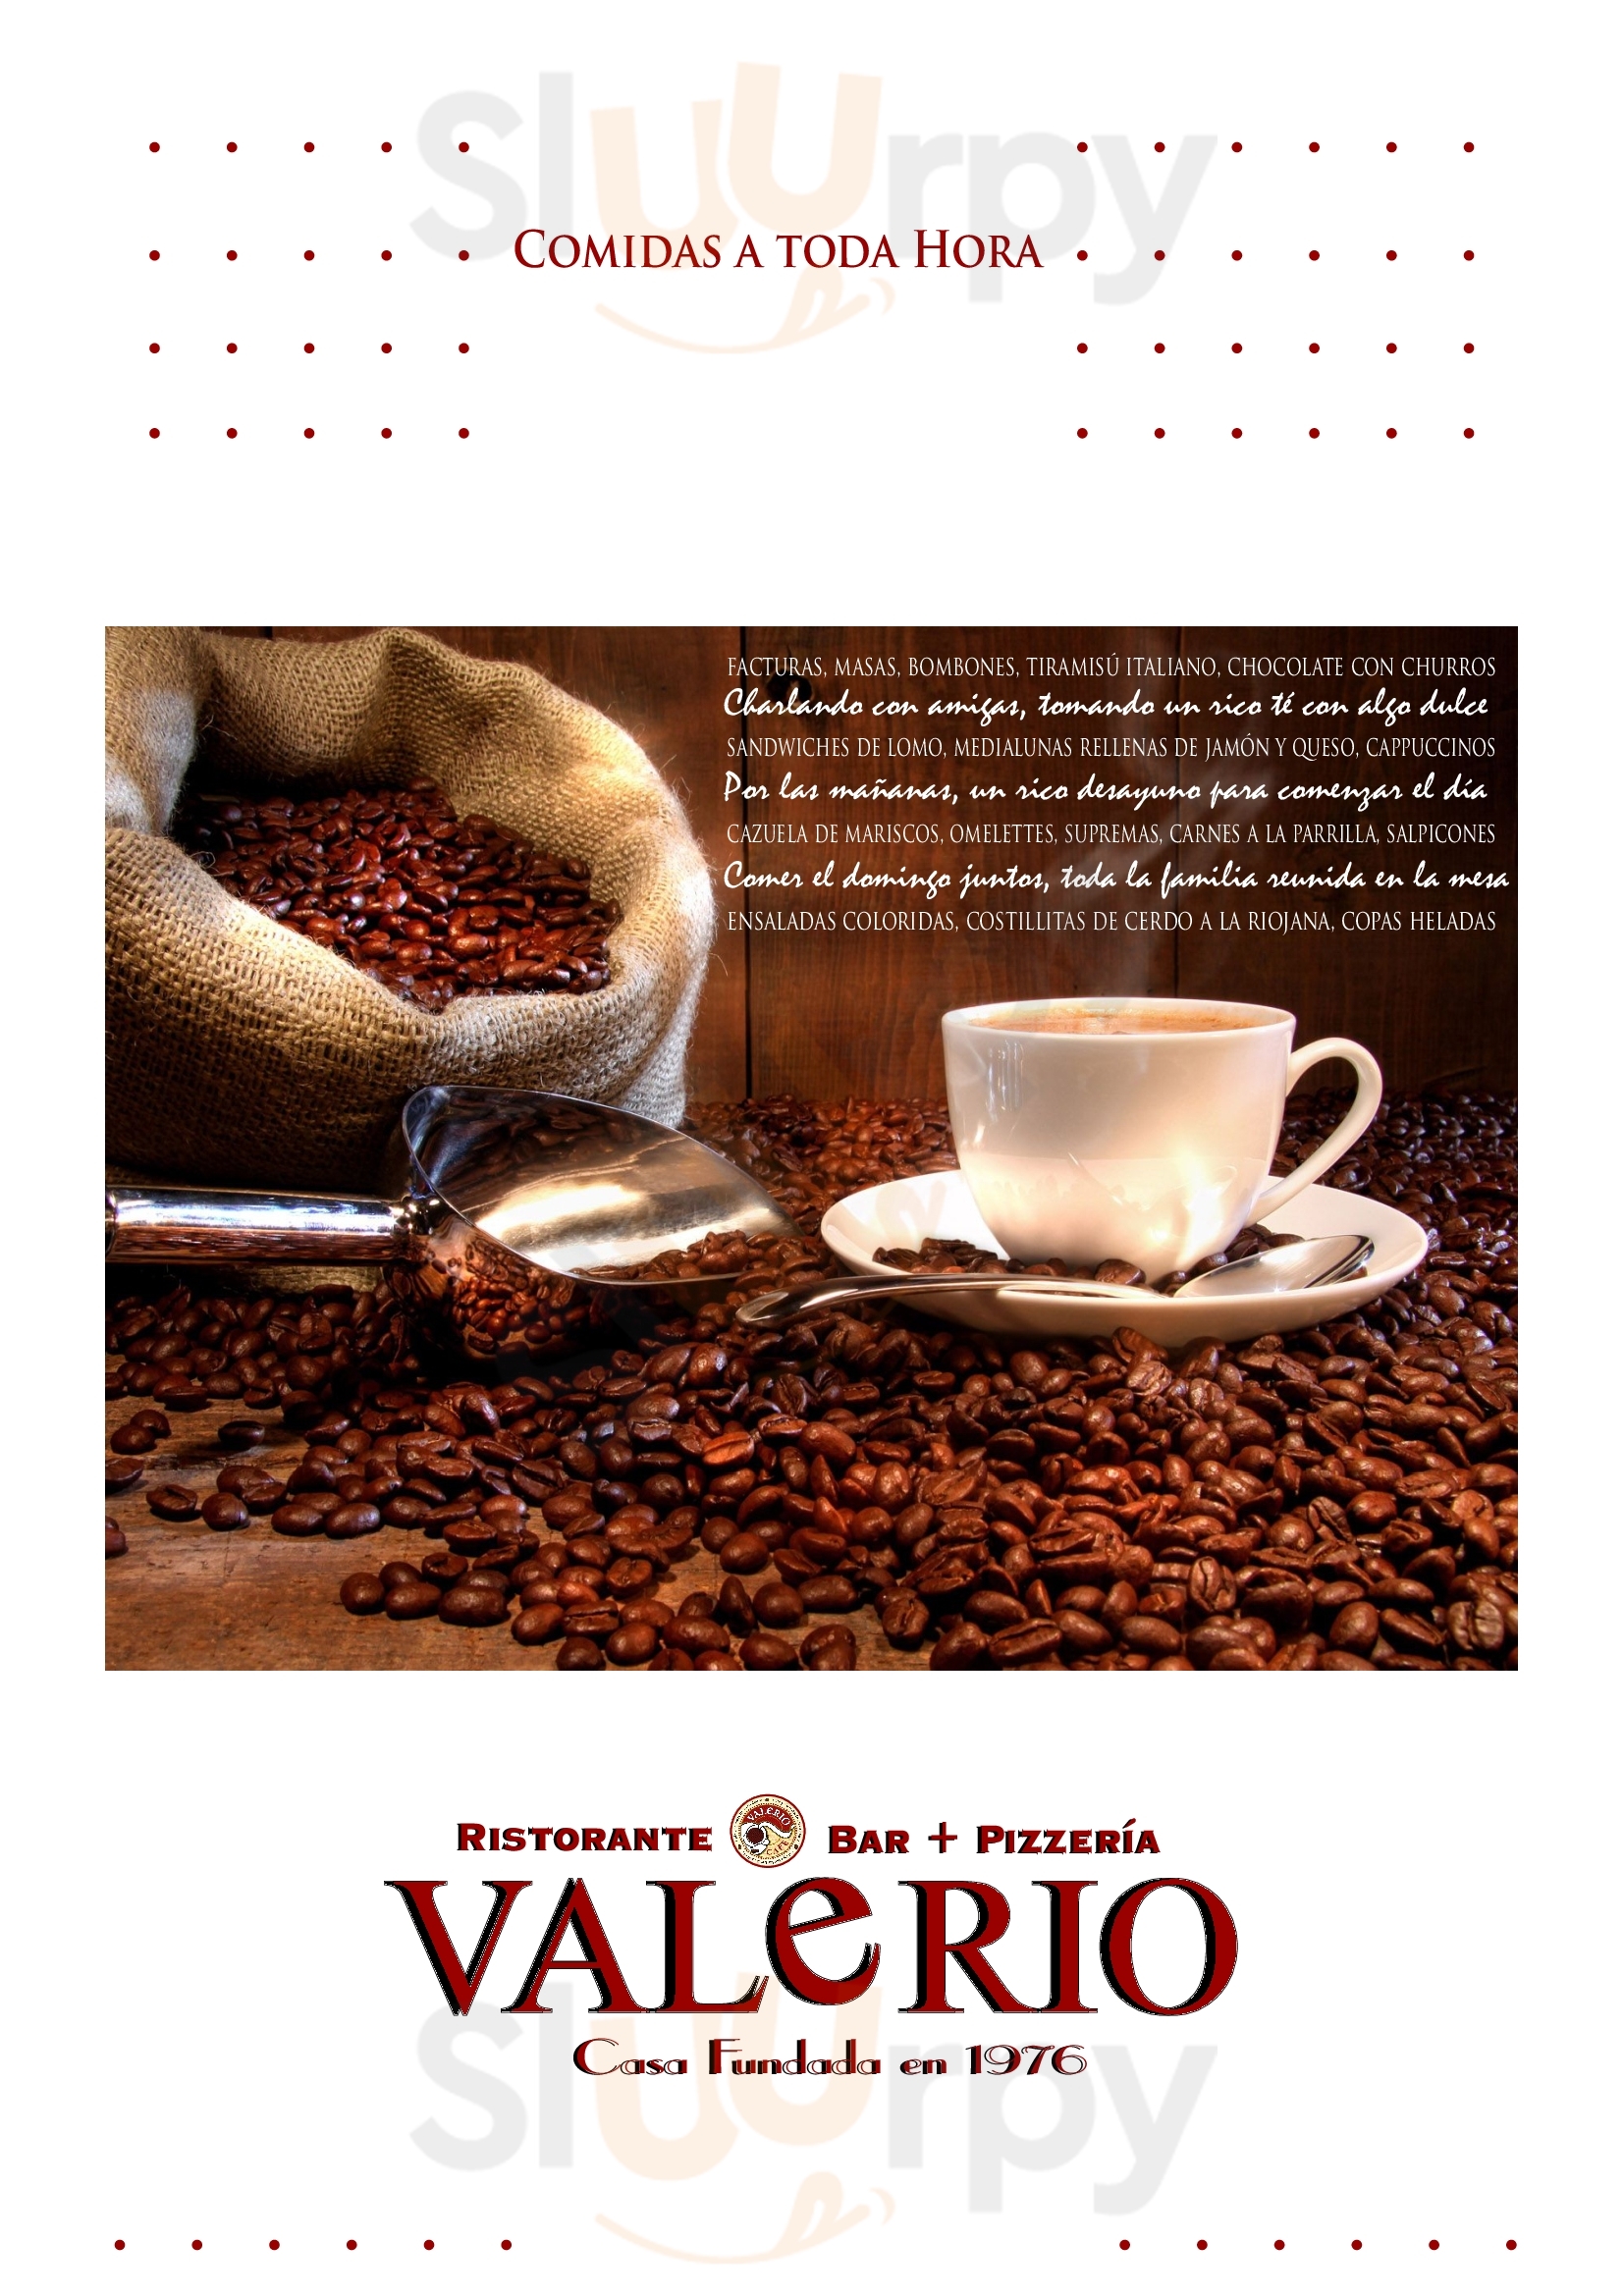 Café Valerio Buenos Aires Menu - 1